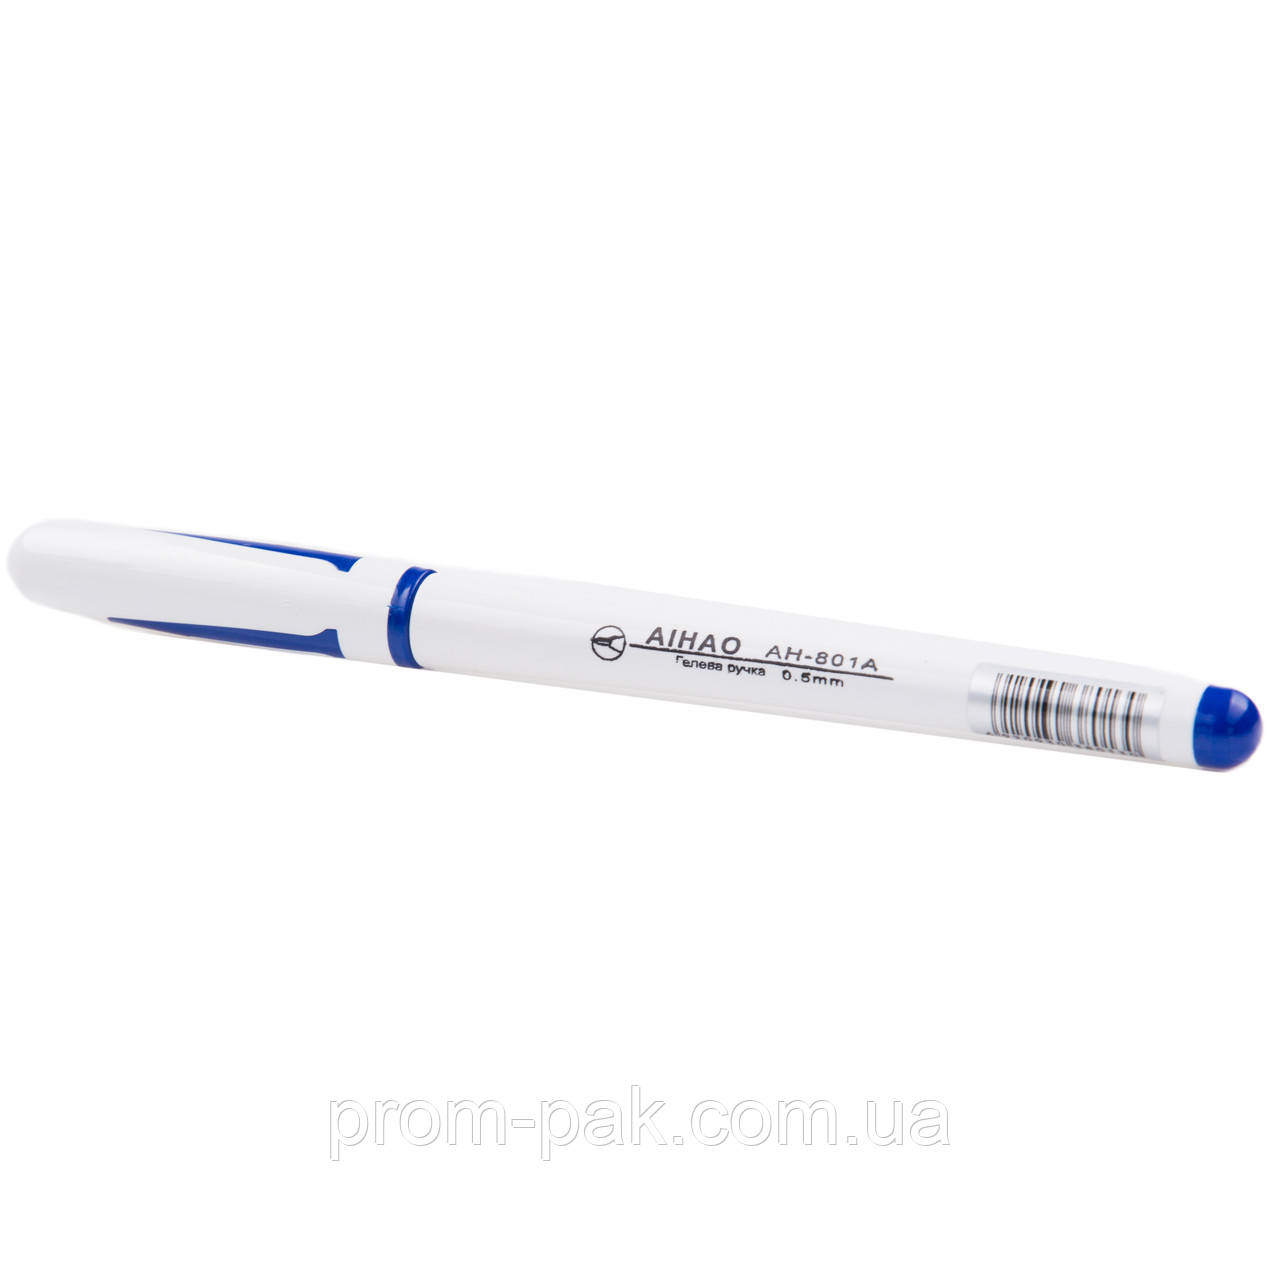 Ручка гелева AIHAO 801-A синя